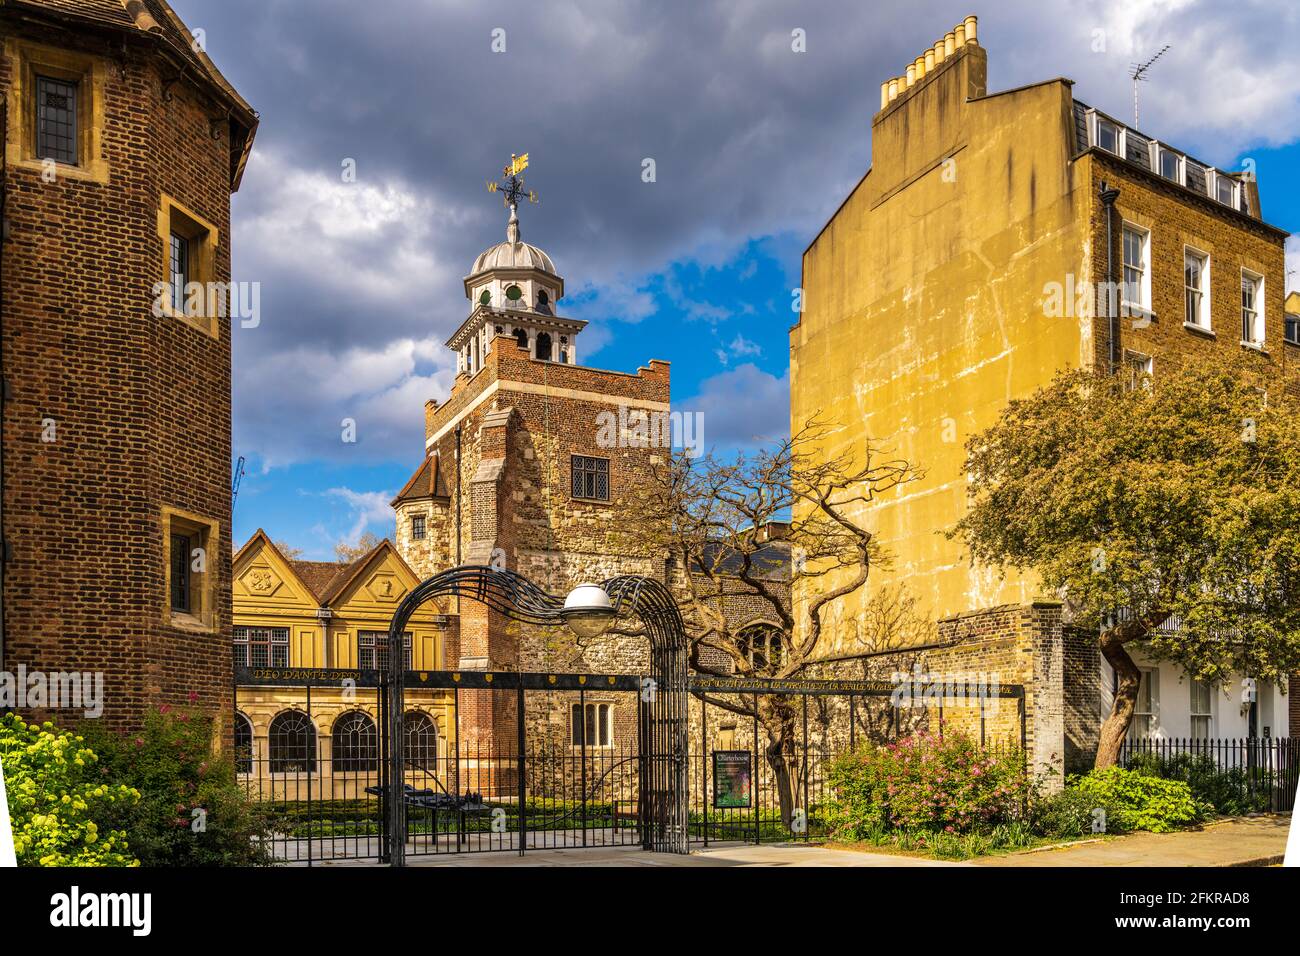 La Chartreuse de Londres - la Chartreuse de Smithfield Londres est un complexe de bâtiments datant du XIVe siècle. Catégorie I. Palais Tudor. Banque D'Images